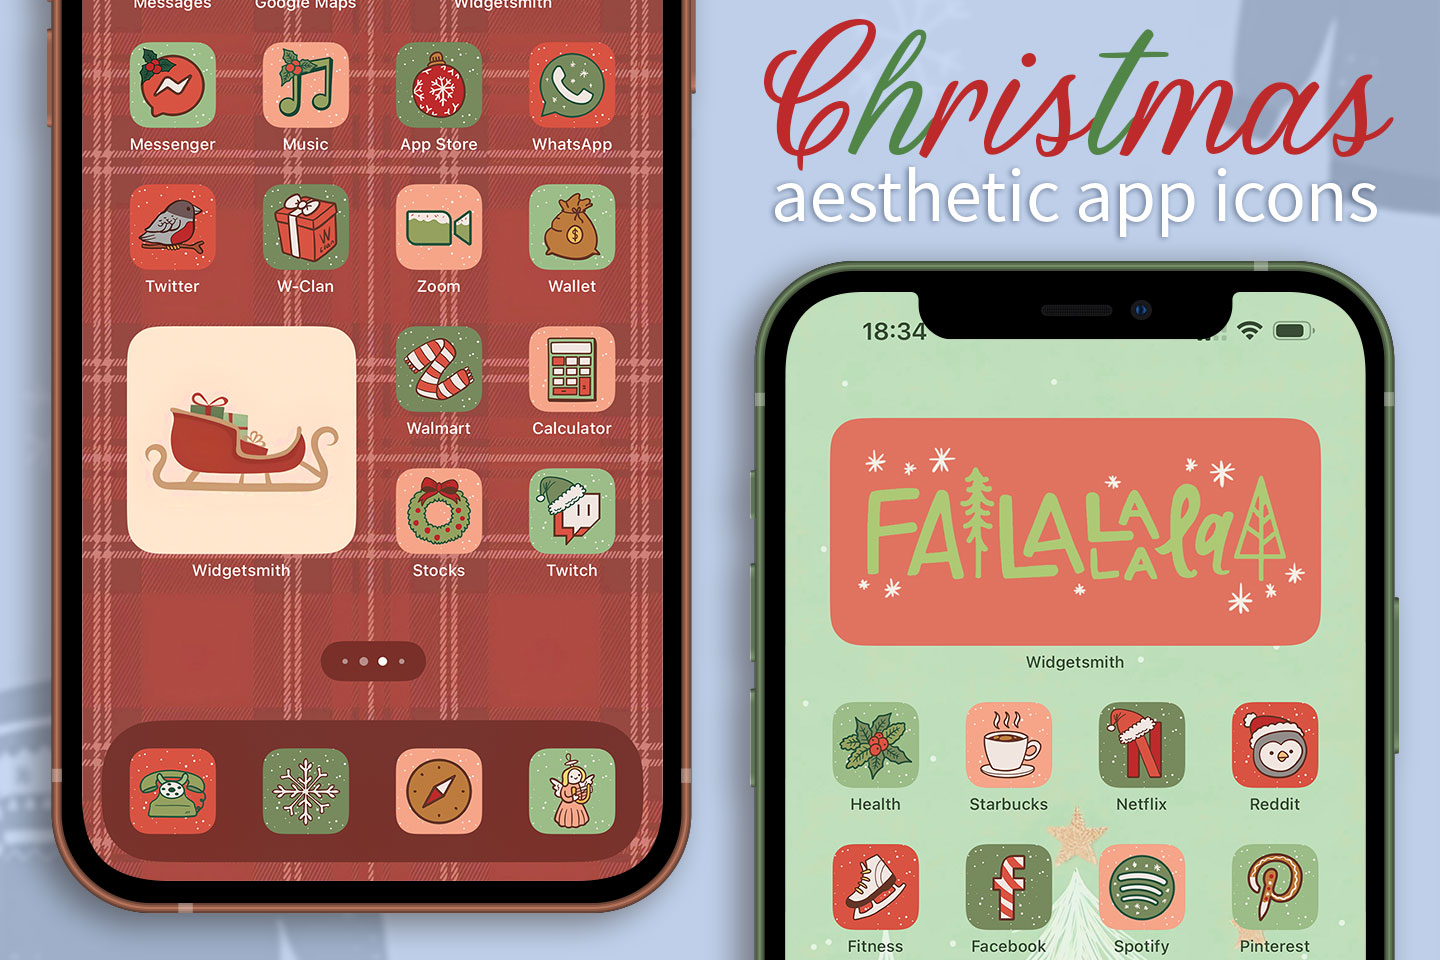 Copia del paquete de iconos de la aplicación de estética navideña